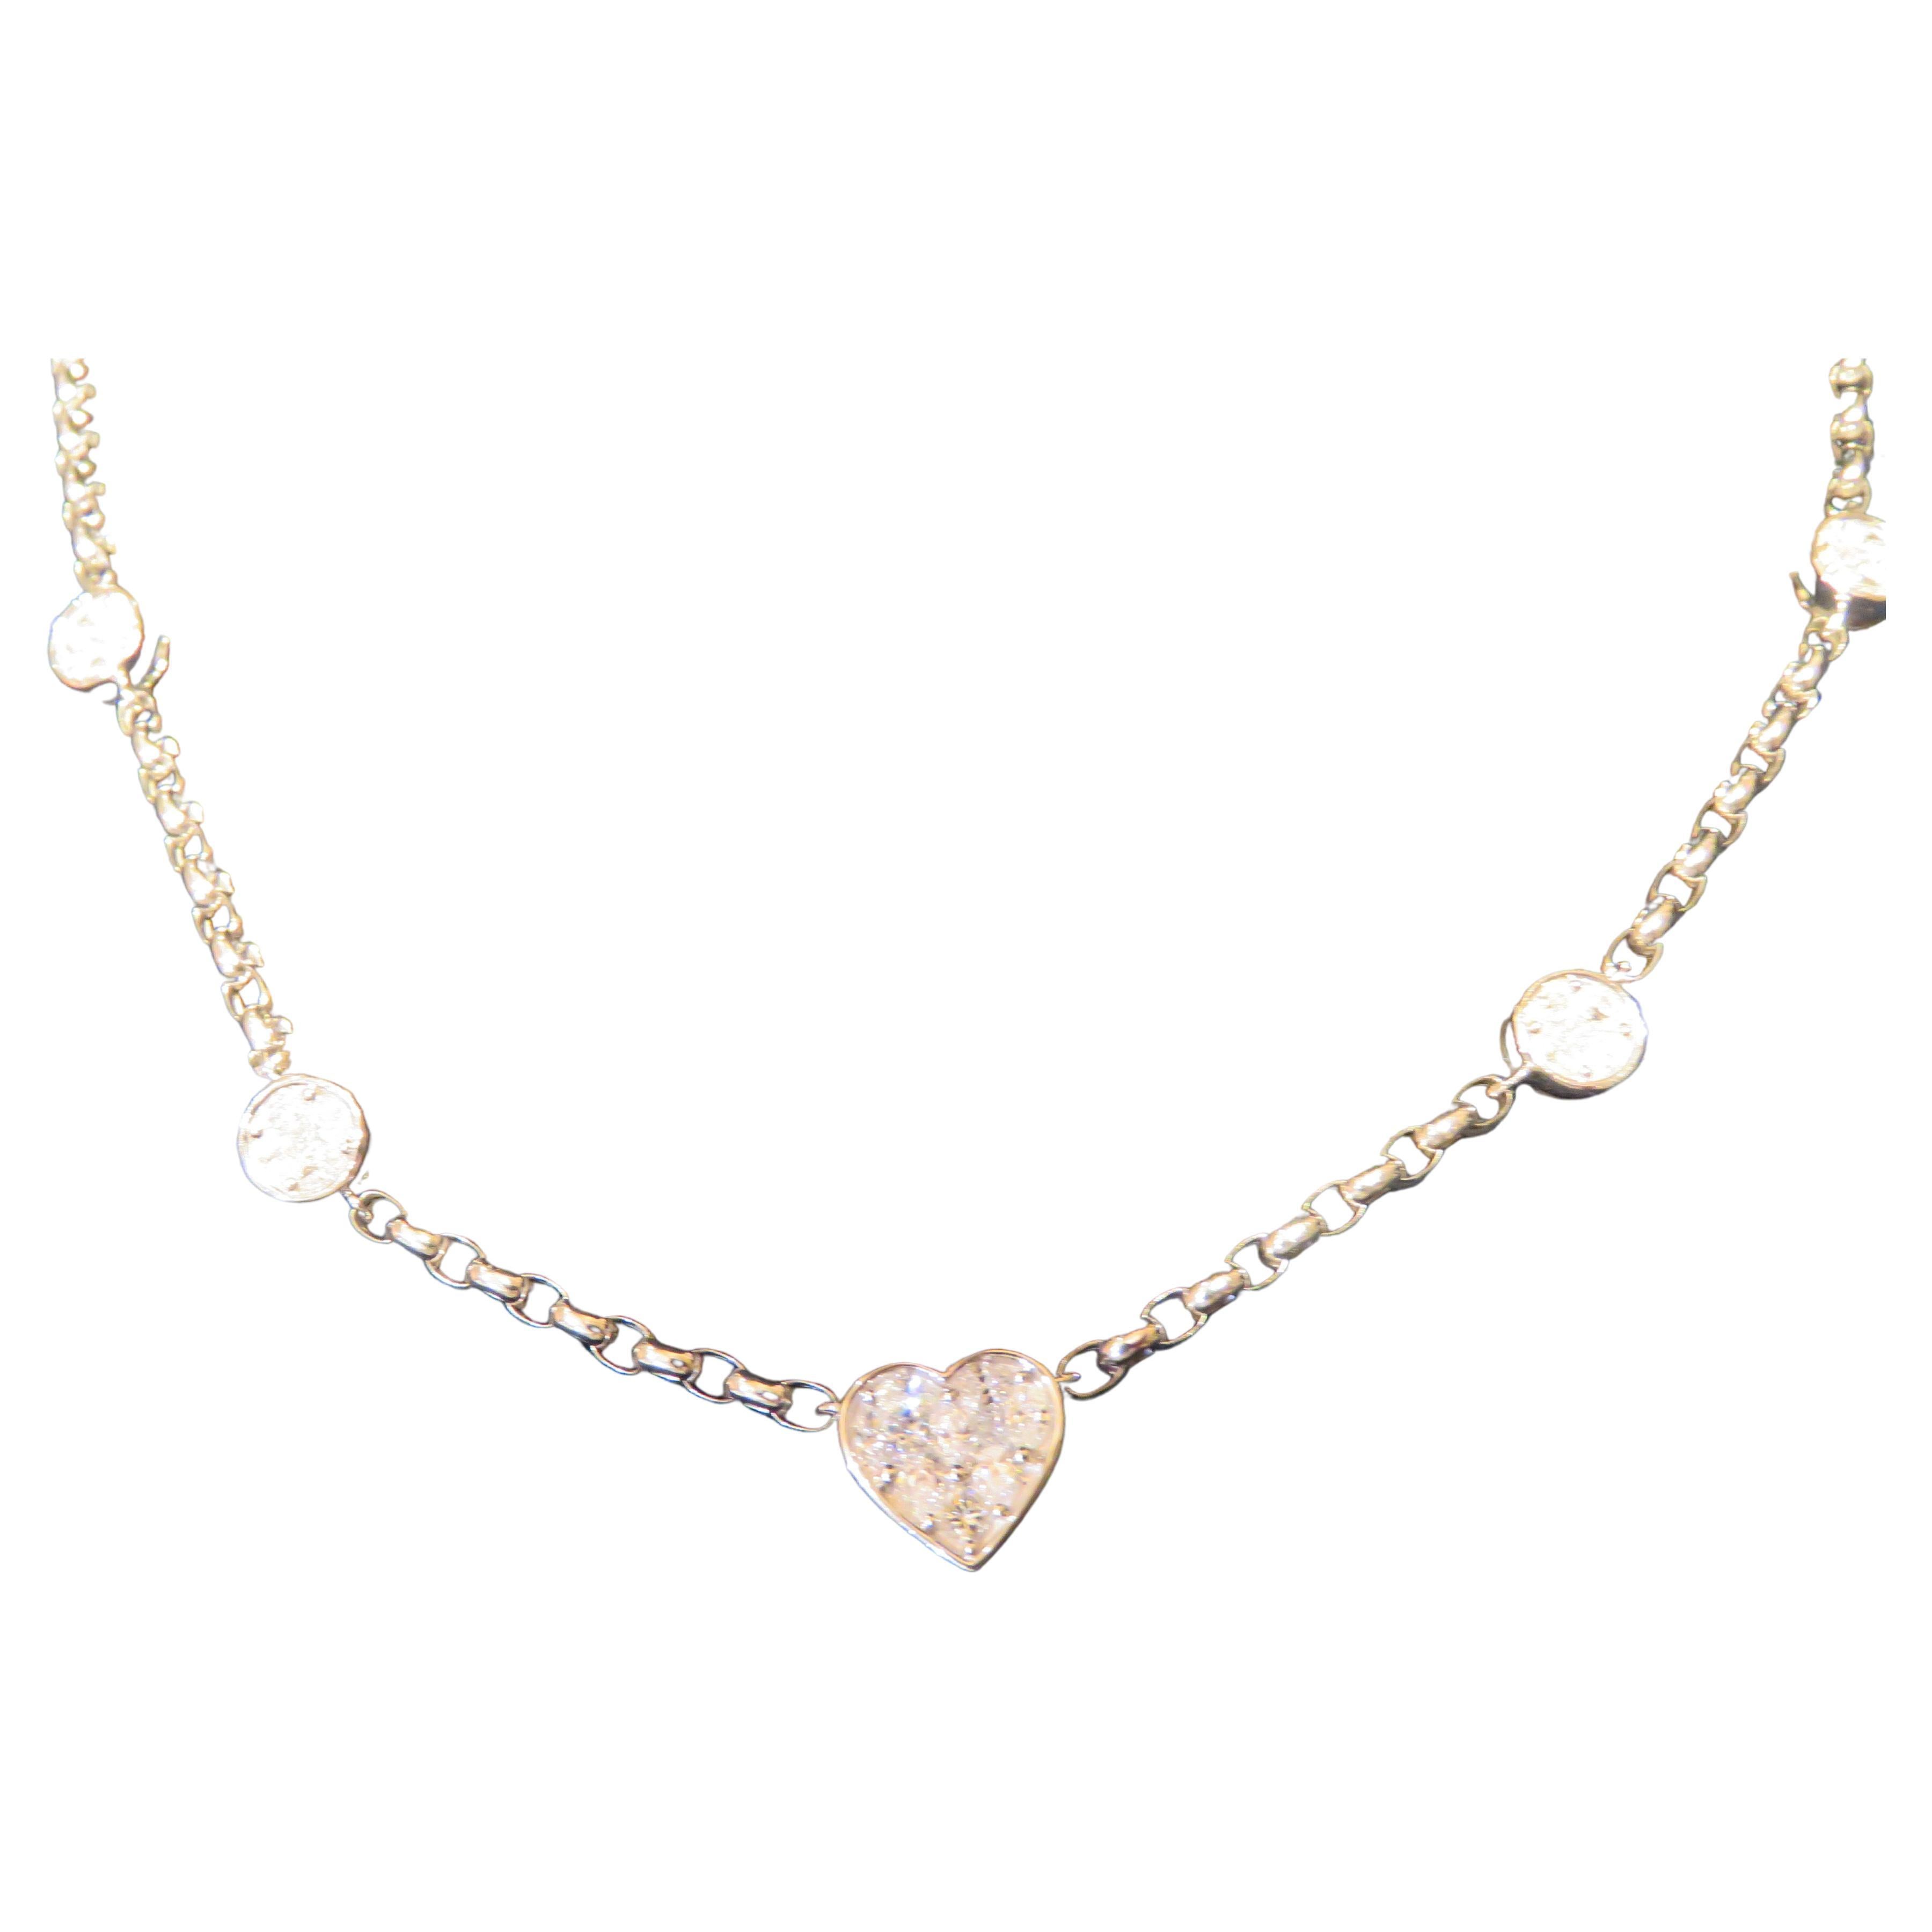 NEU $17, 812 18KT Gold Glitzernde Fancy Pave Herz- und runde Diamant-Halskette, Neu mit Diamanten